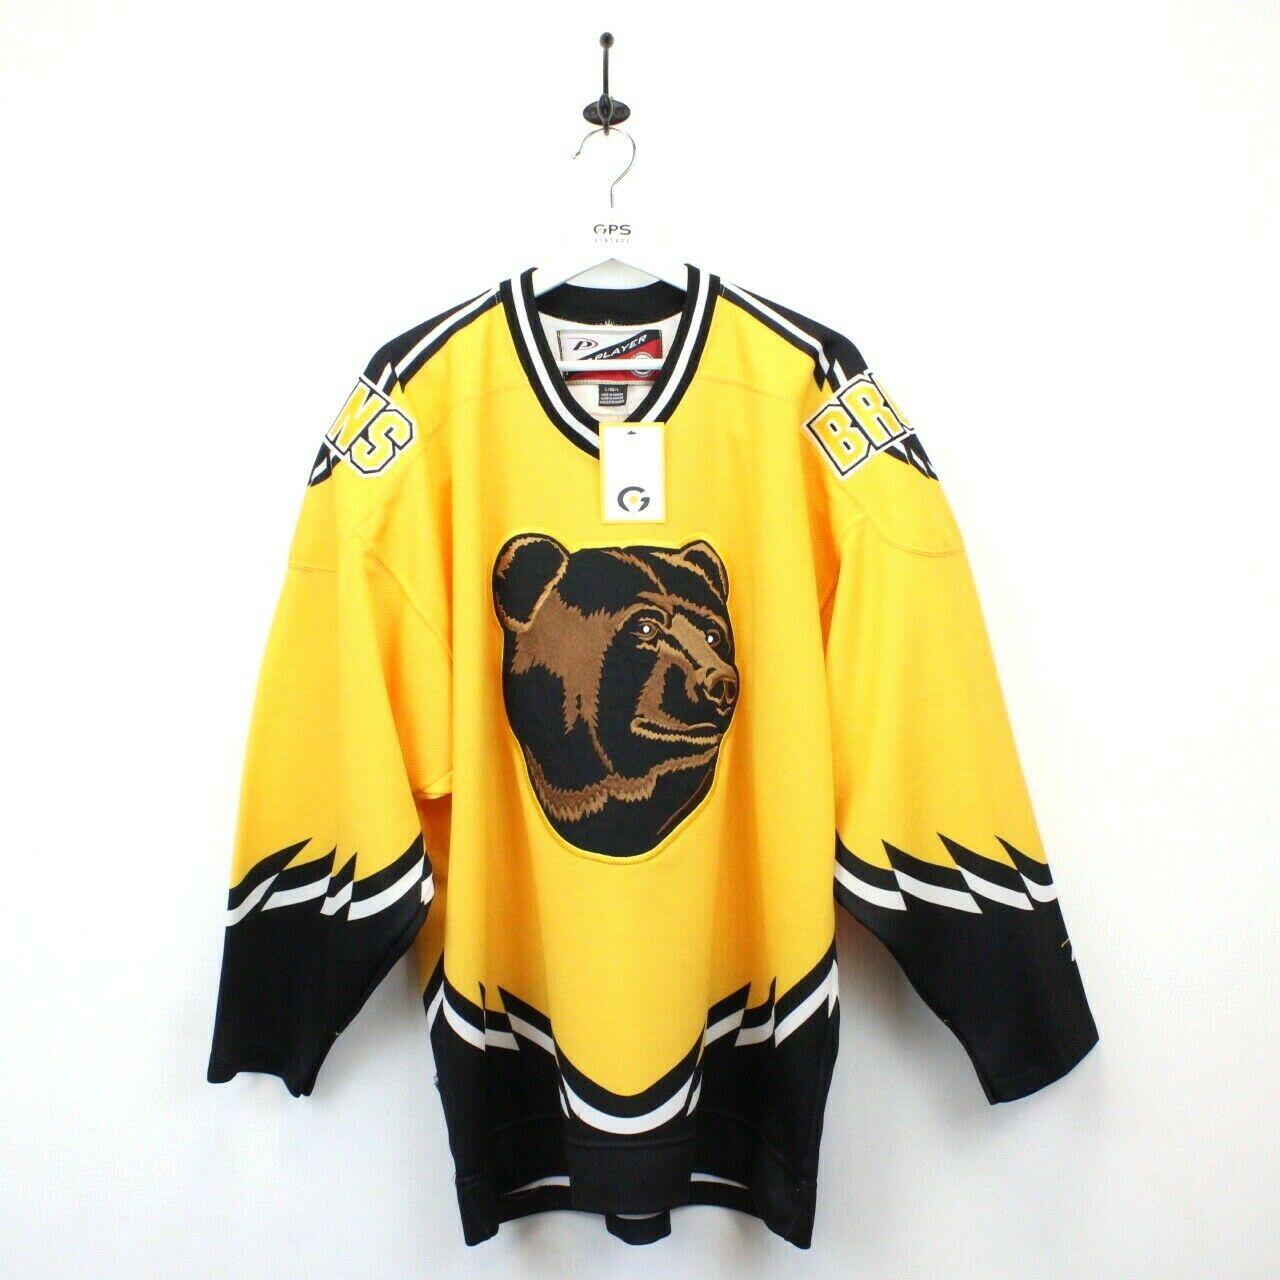 Buy 1996-2000 Bruins Jersey 90s Boston Bruins Jersey90s Bruins Online in  India 